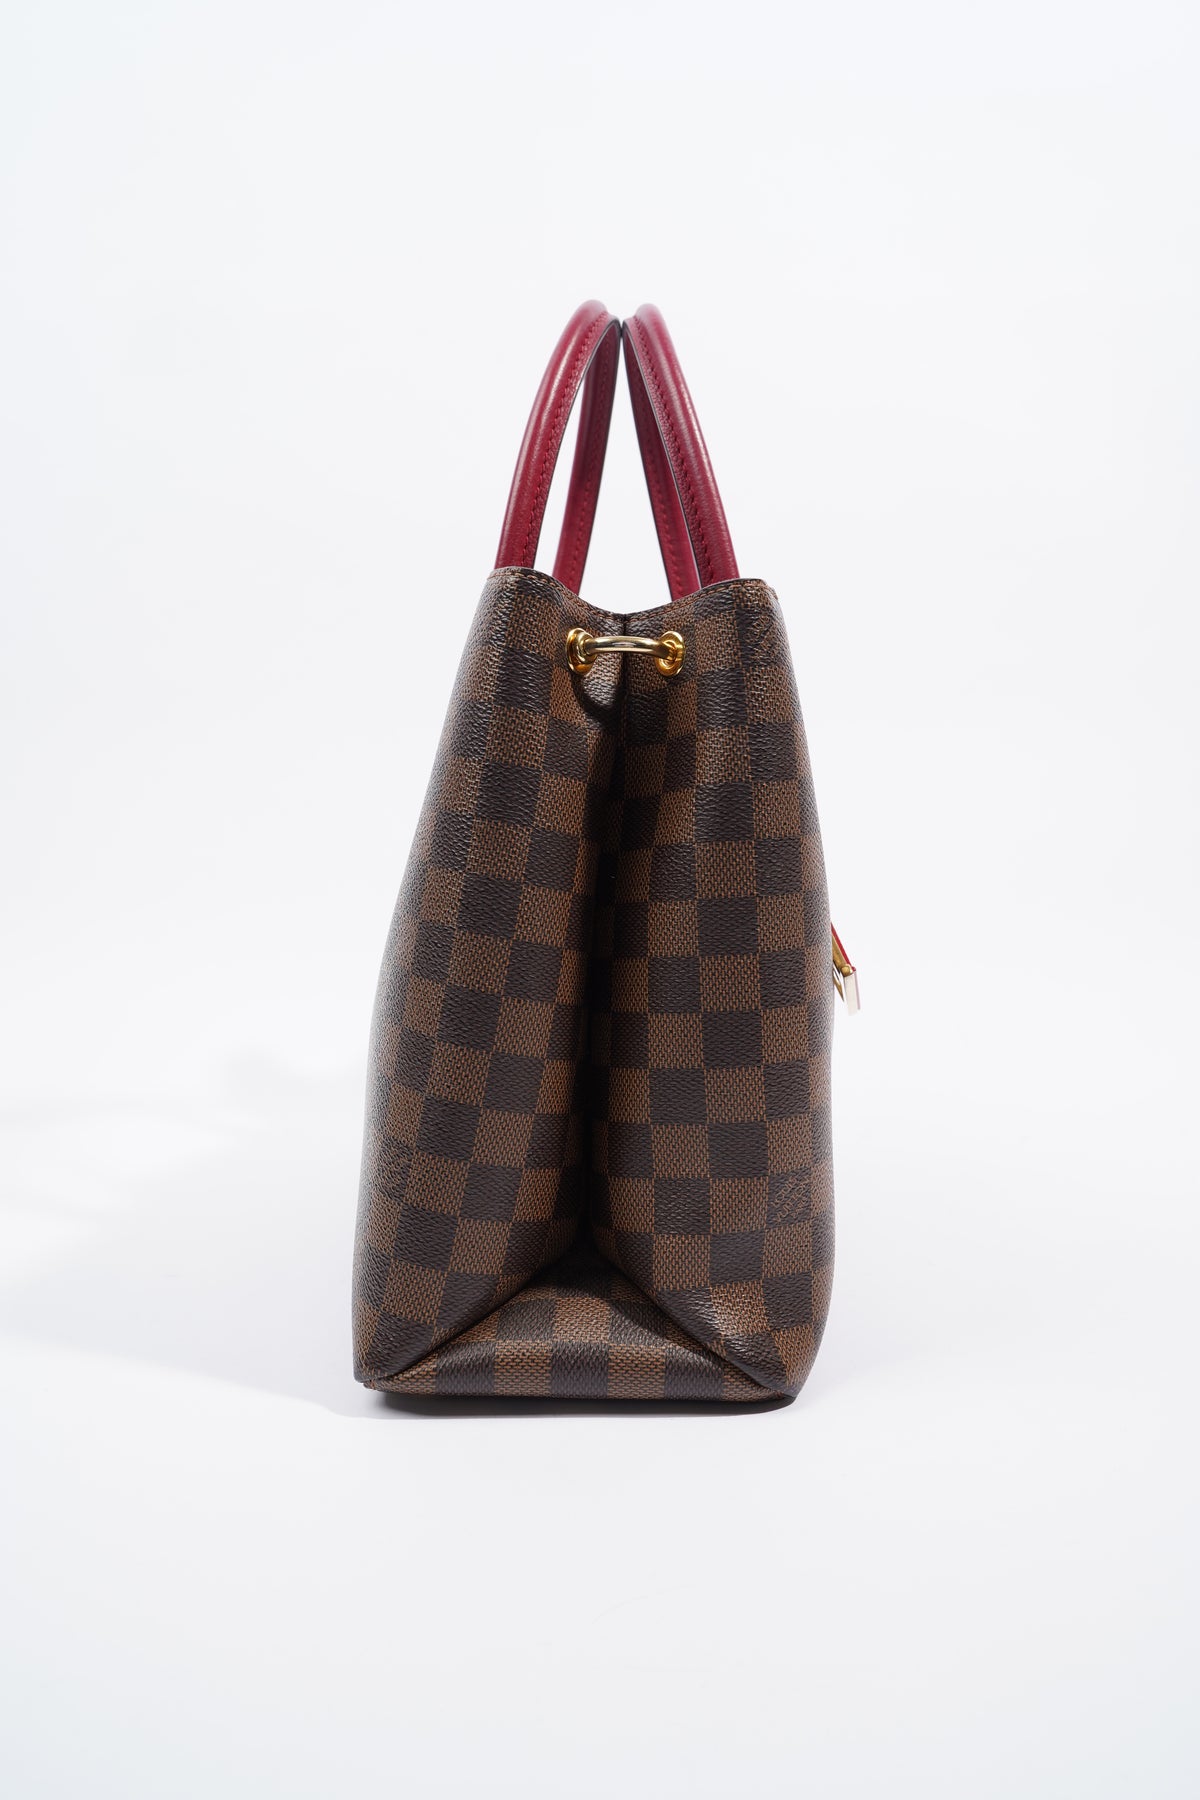 Louis Vuitton Damier Ebene Riverside Satchel Shoulder Bag - A World Of  Goods For You, LLC